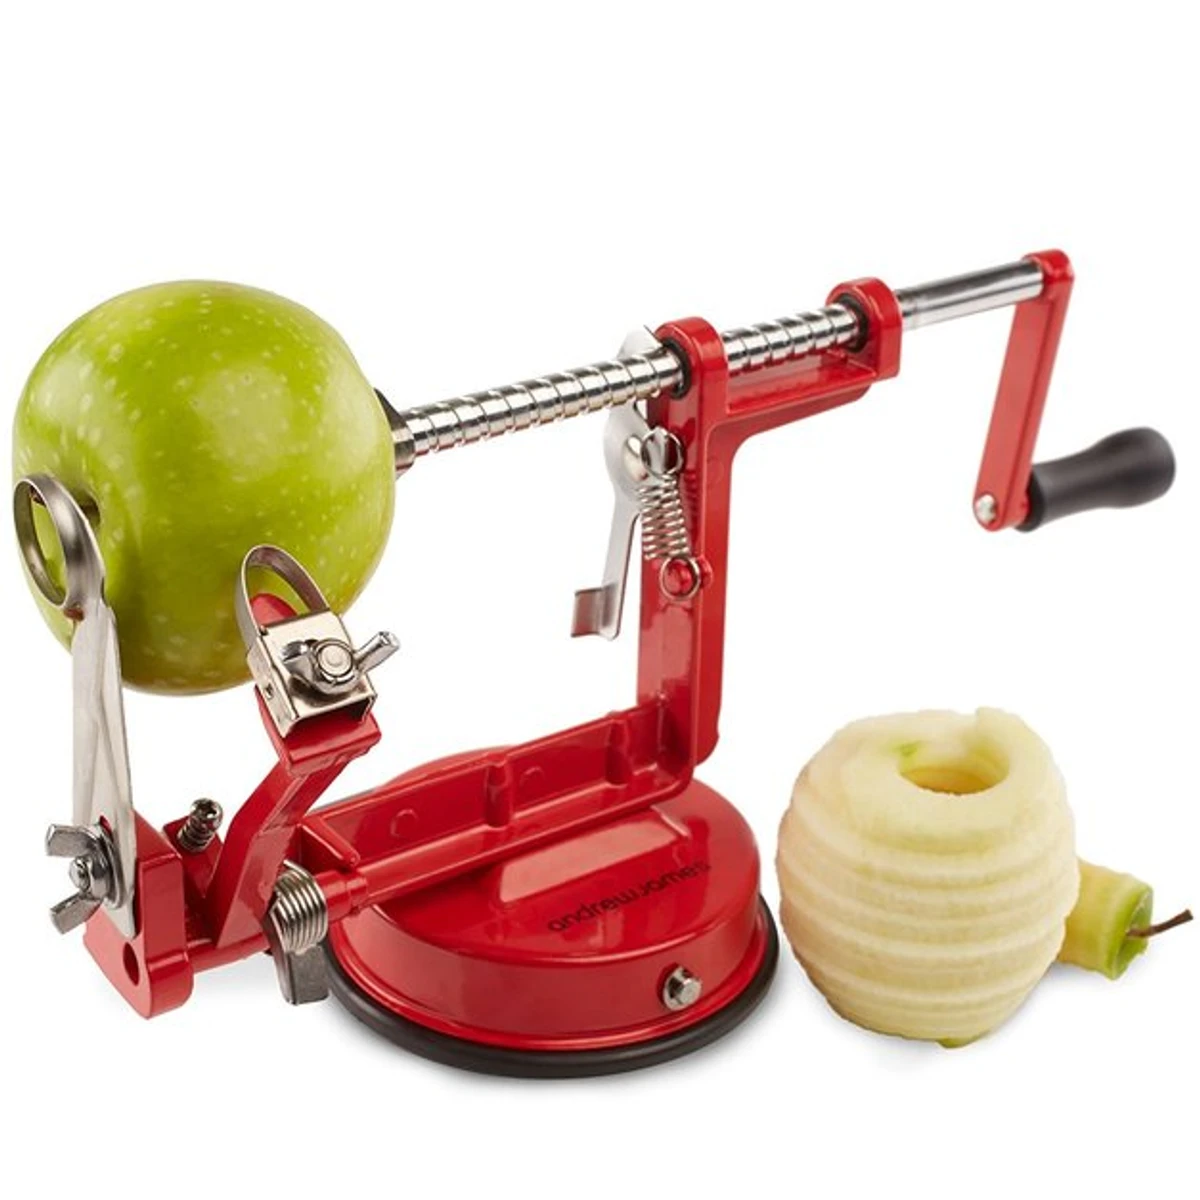 Apple Peeler Peeling Machine